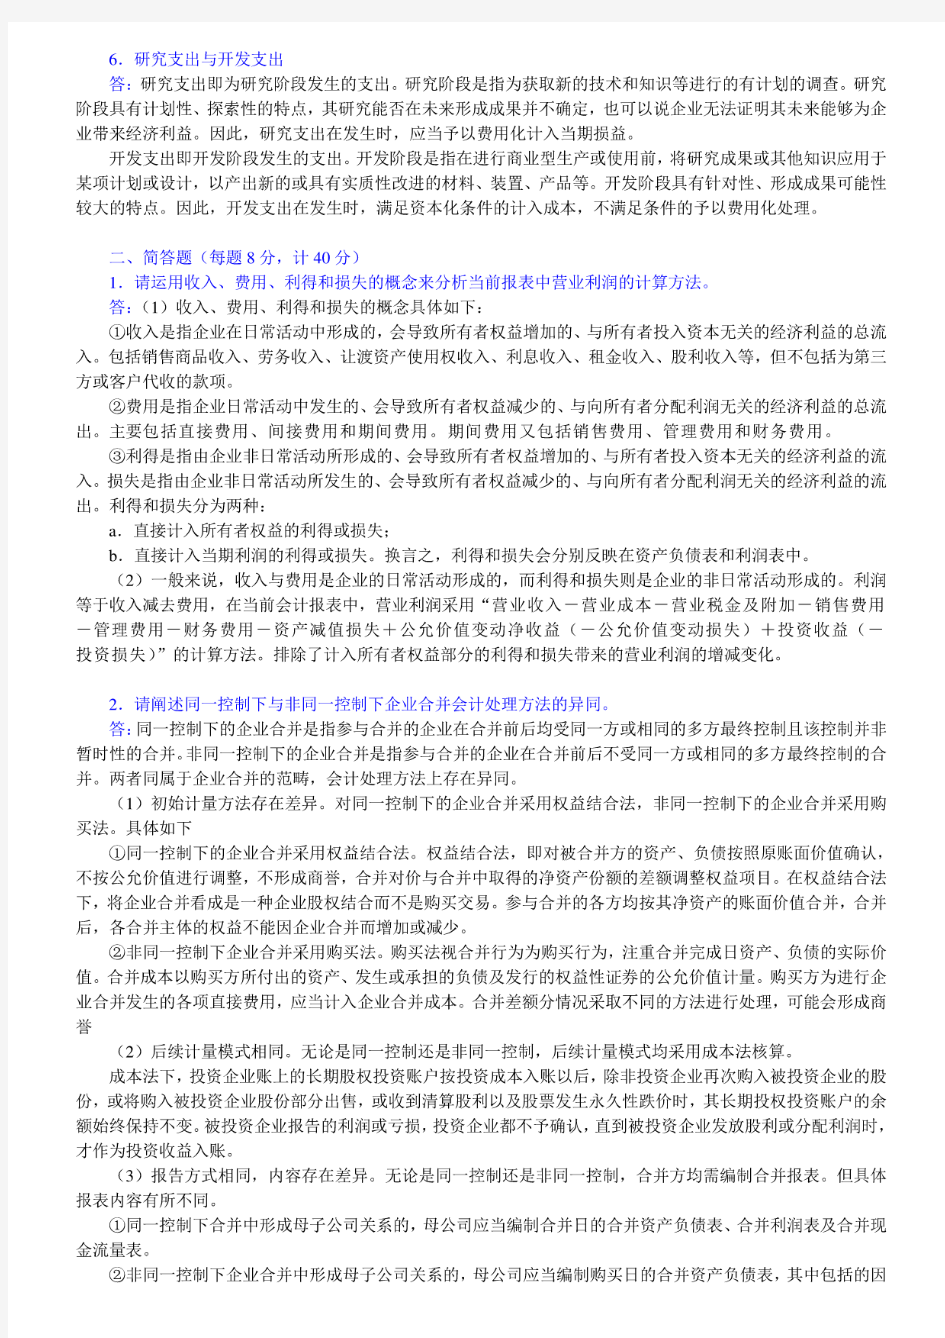 2012年南京大学商学院920会计学考研真题及详解